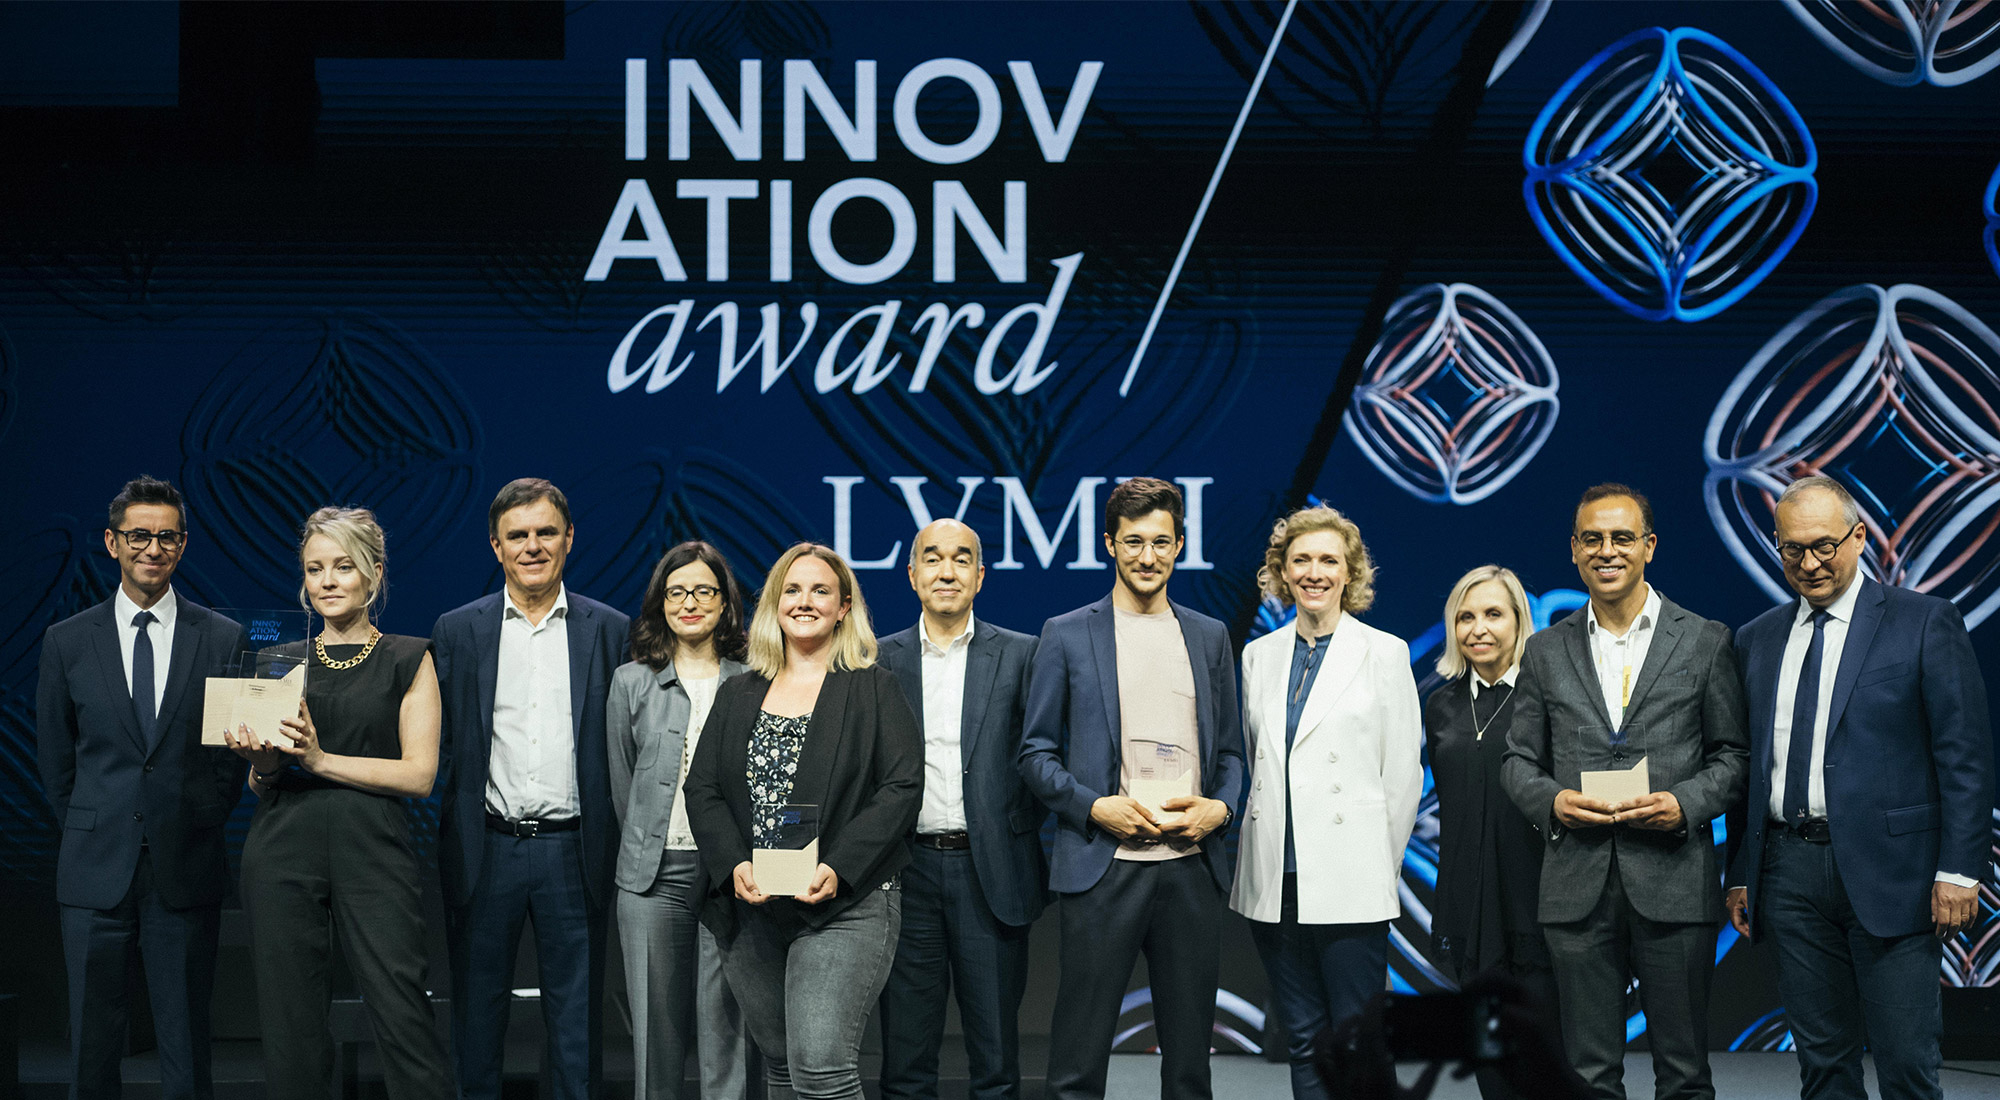 LVMH Innovation Award 2020 - LVMH